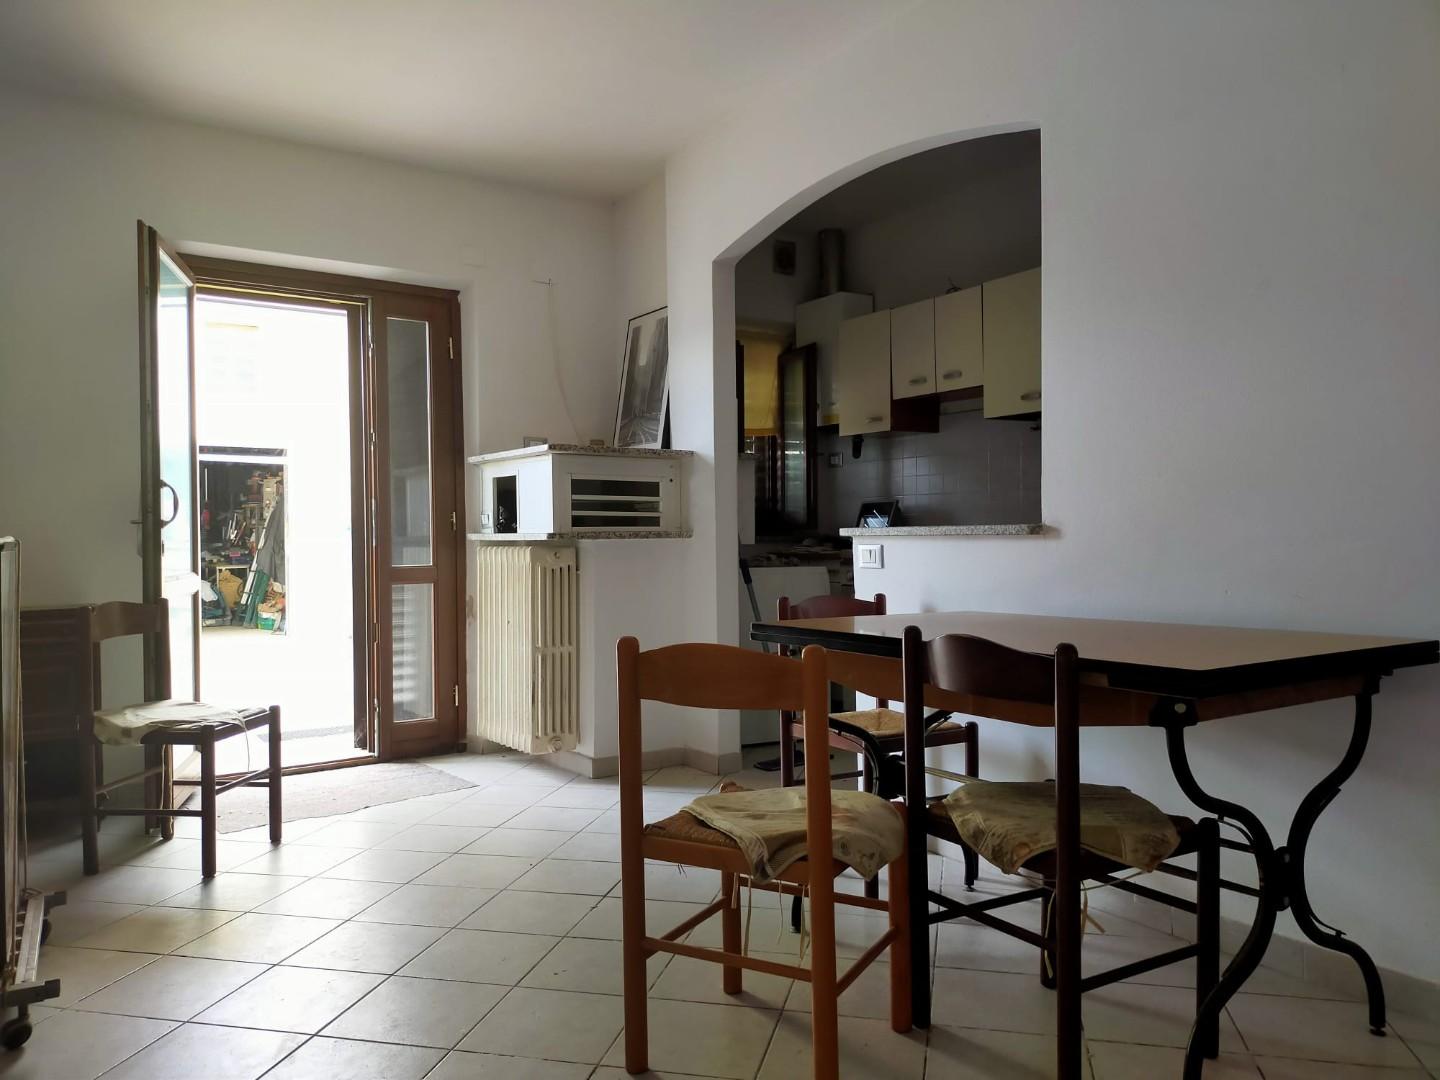 Appartamento in vendita a Cascina, 2 locali, prezzo € 130.000 | PortaleAgenzieImmobiliari.it